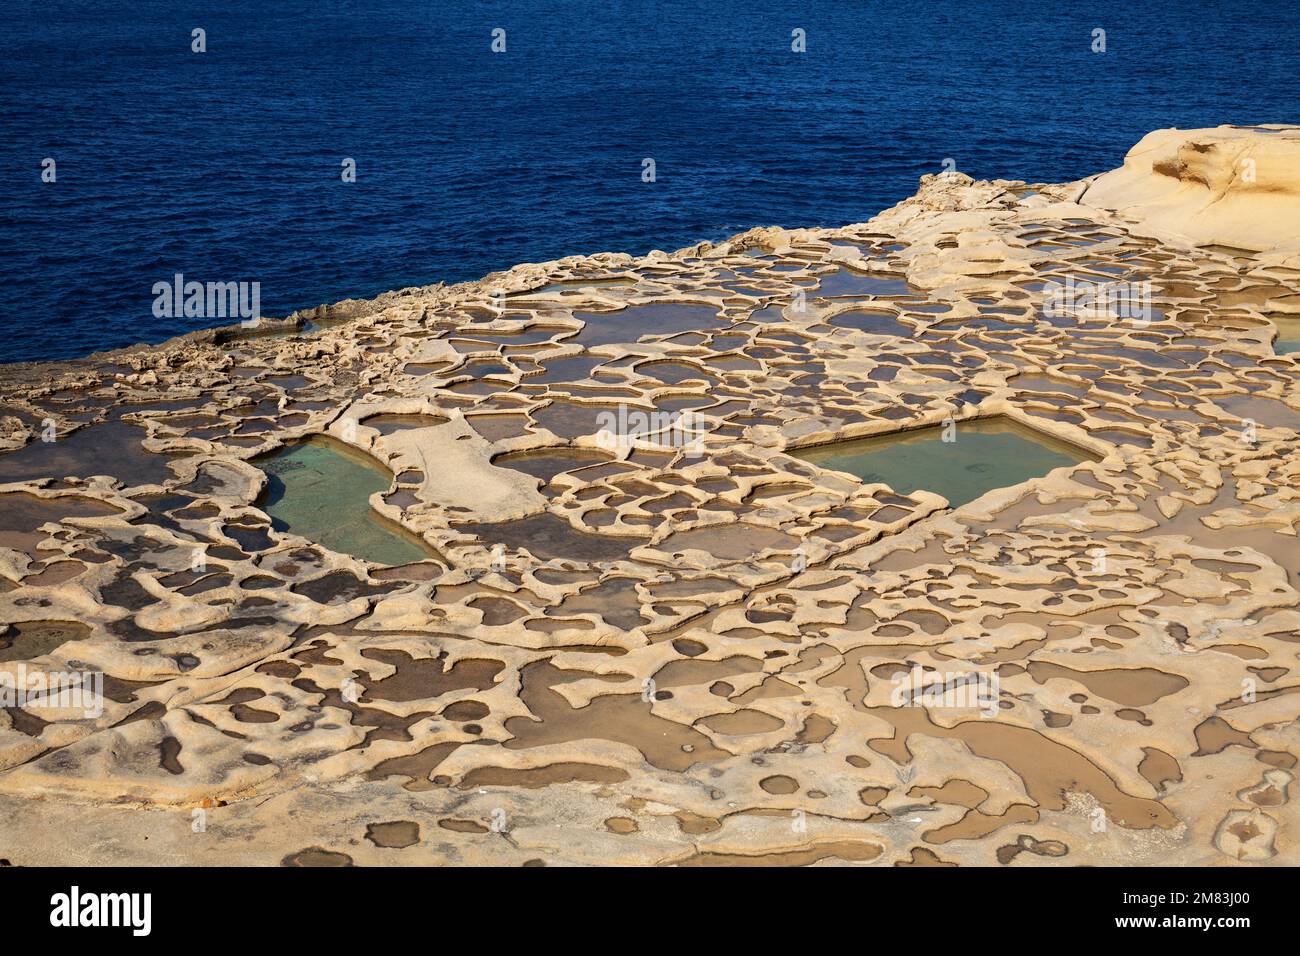 Meersalzgewinnung auf der Insel Comino, Malta Foto de stock